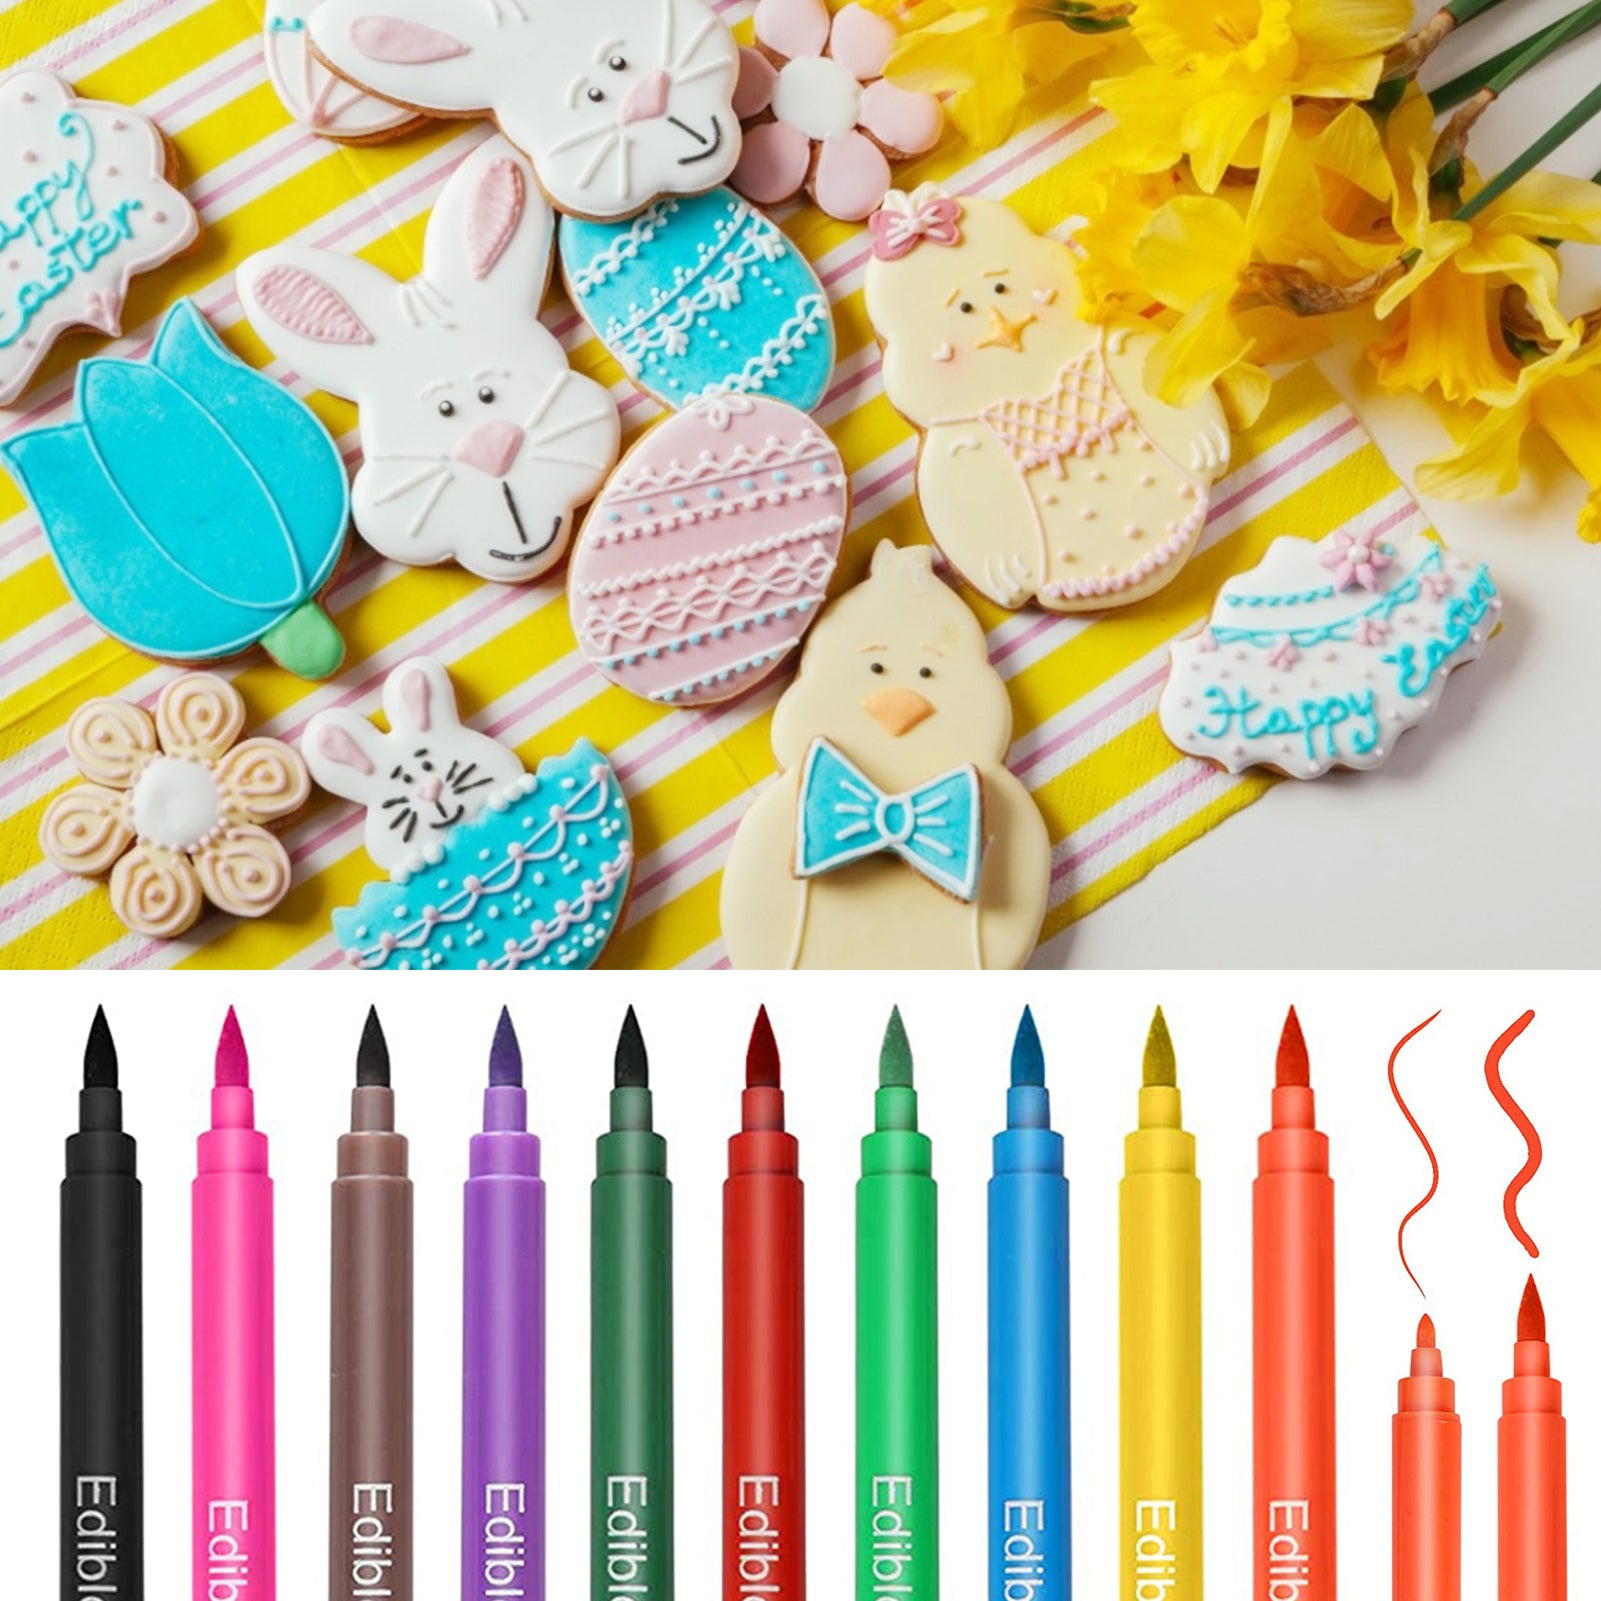 Food coloring pencil set